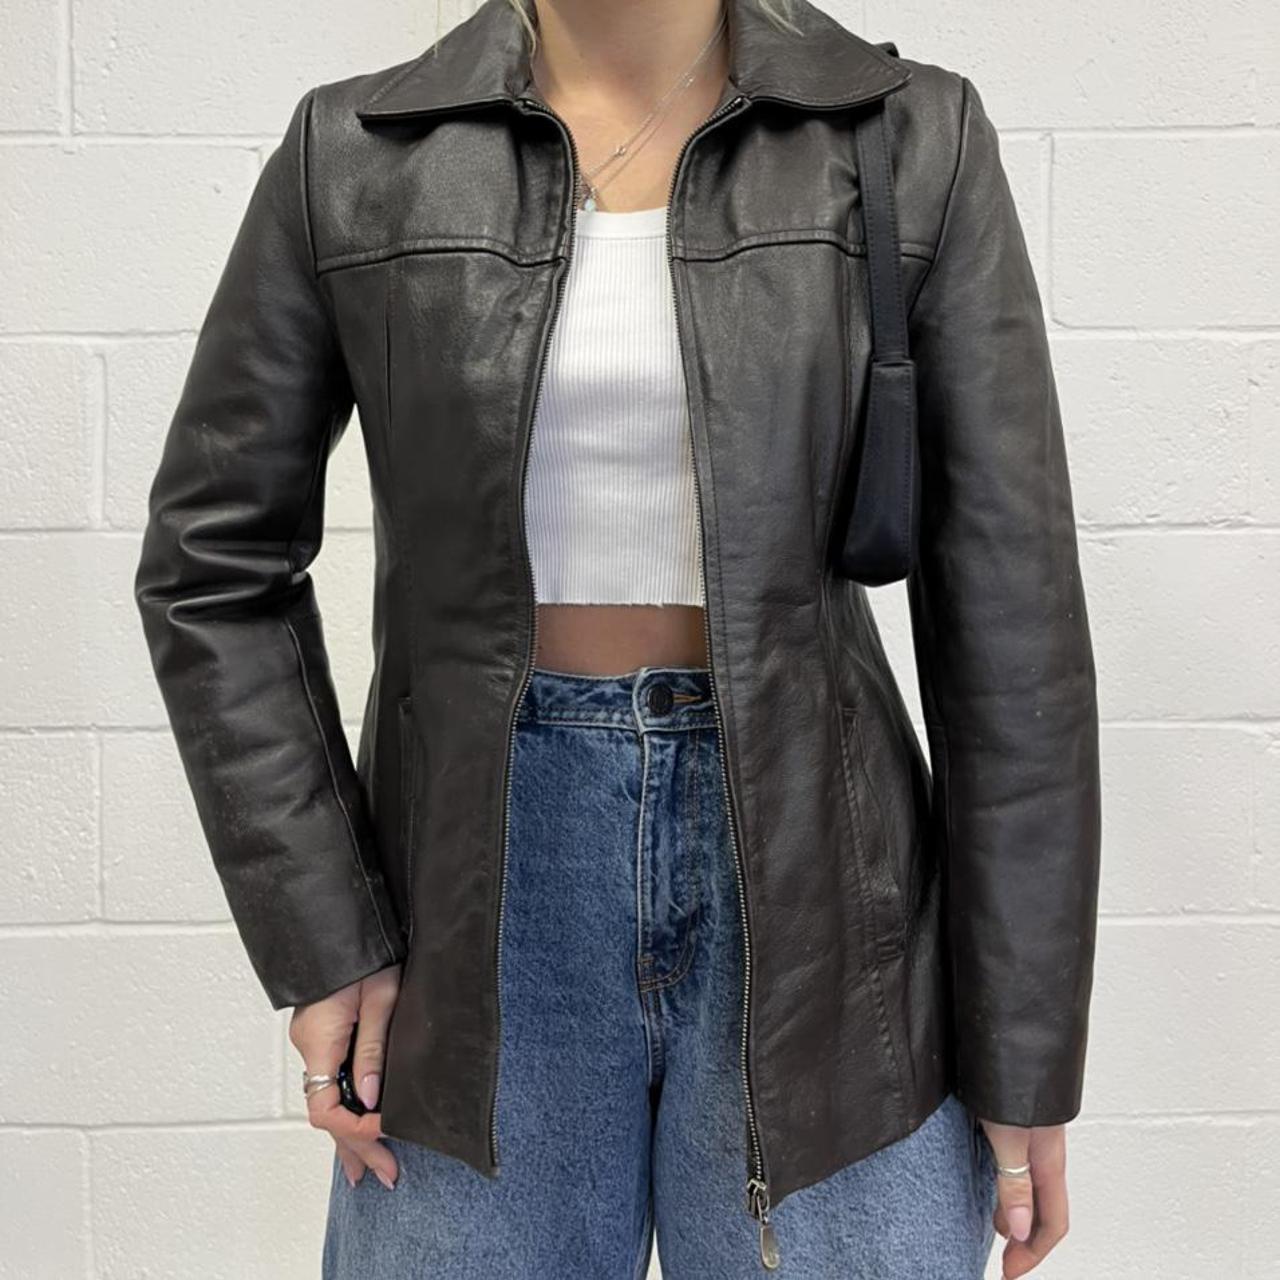 Vintage dark brown genuine leather zip up jacket,... - Depop